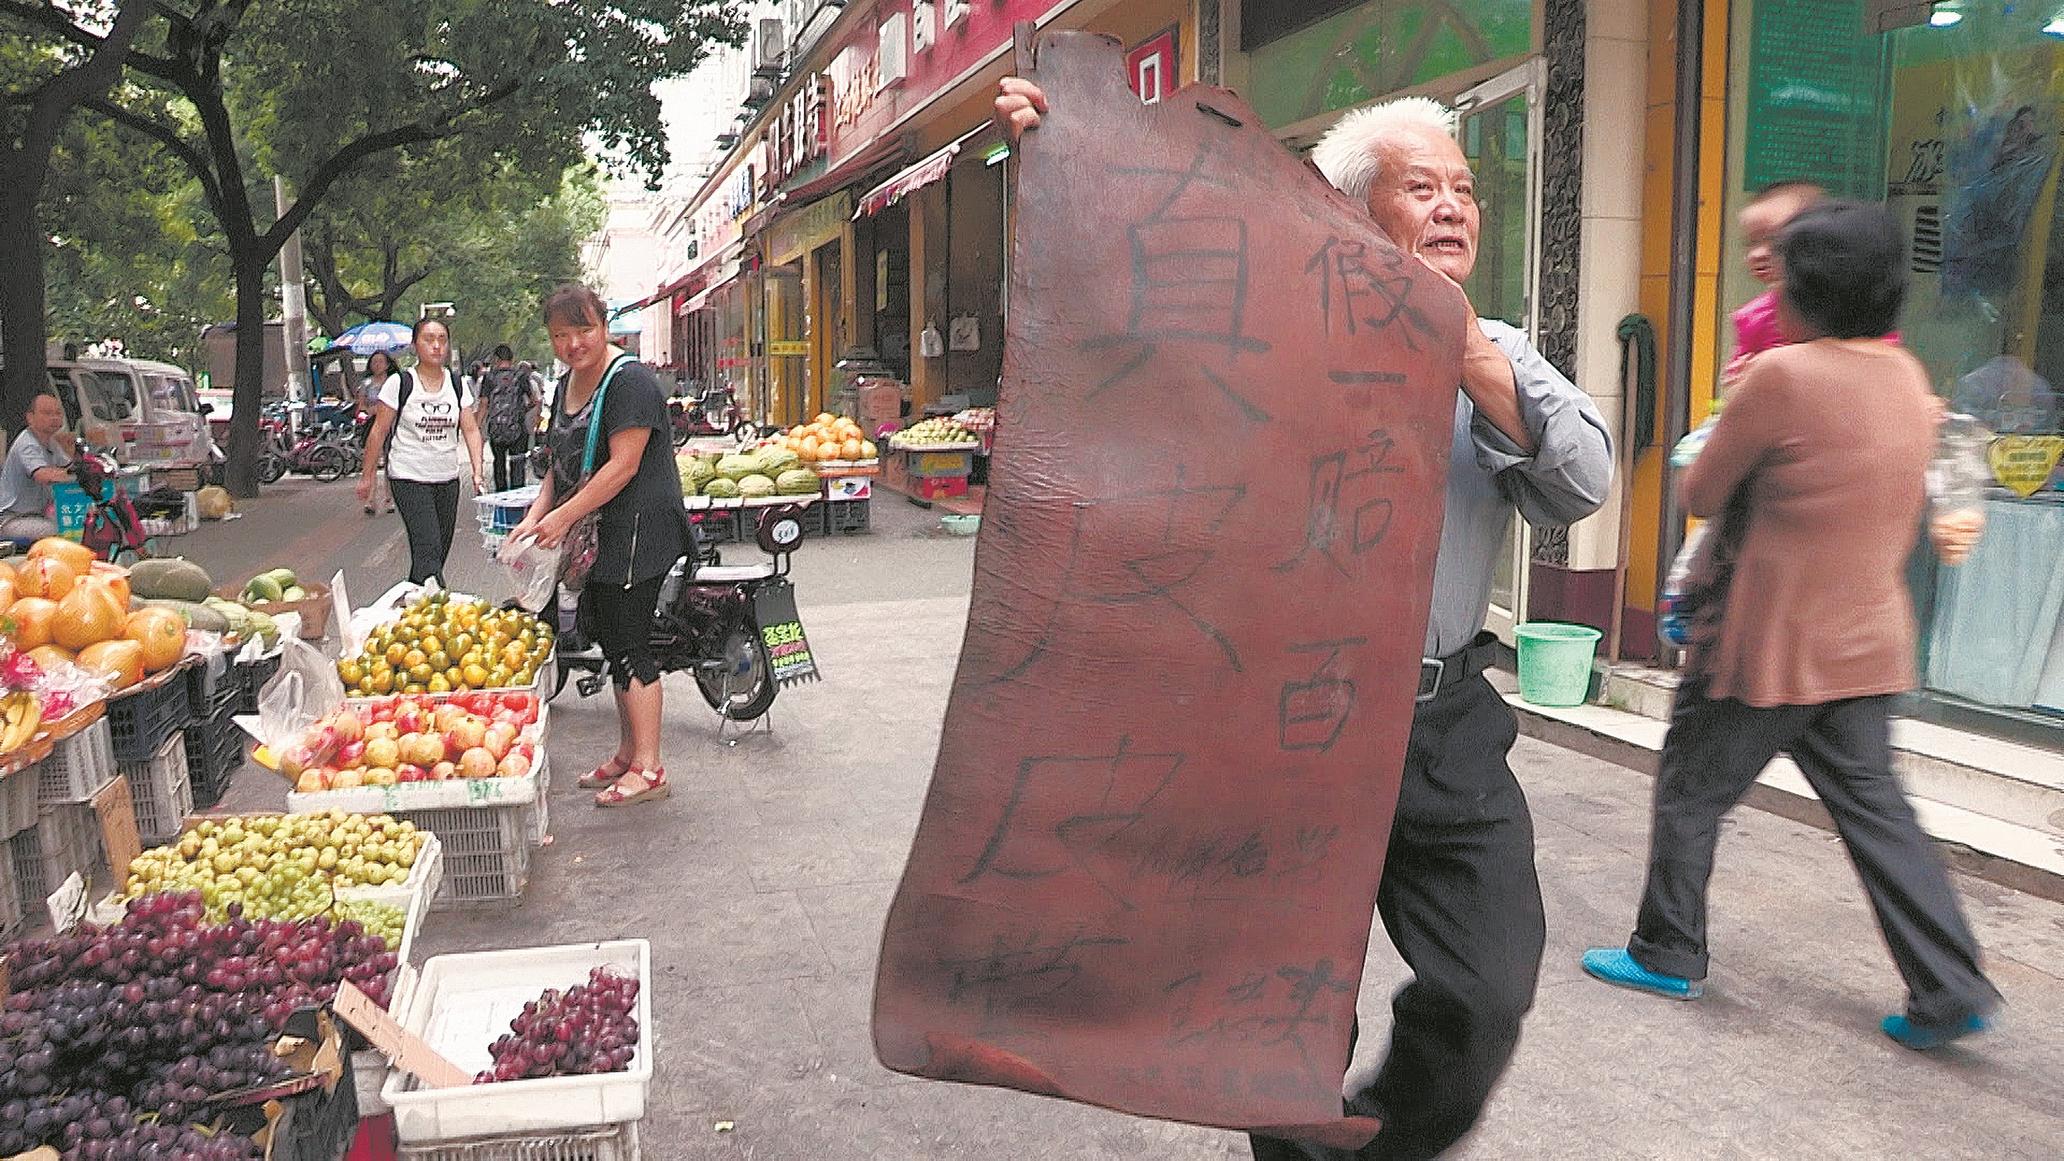 武汉包容了河南小贩的梦想 纪录片《城市梦》生动讲述城管与小贩的“拉锯战”-荆楚网-湖北日报网